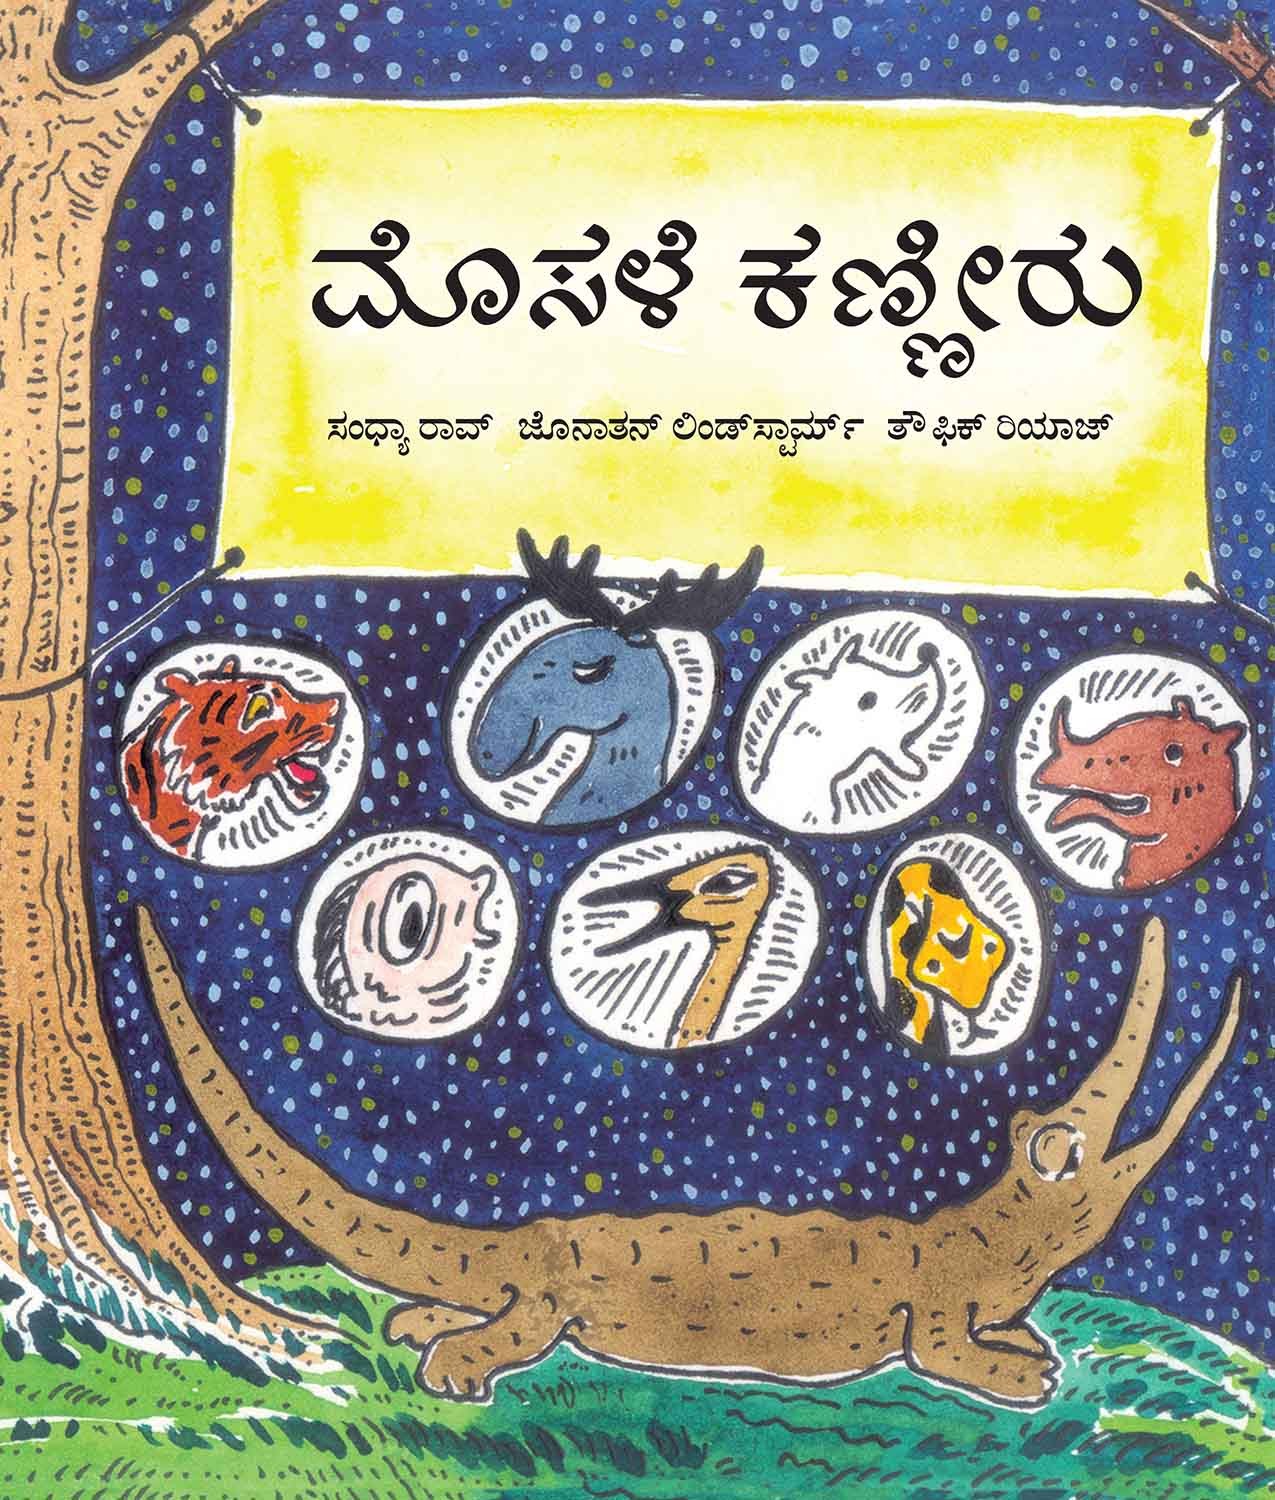 Crocodile Tears/Mosaleya Kanneeru (Kannada)